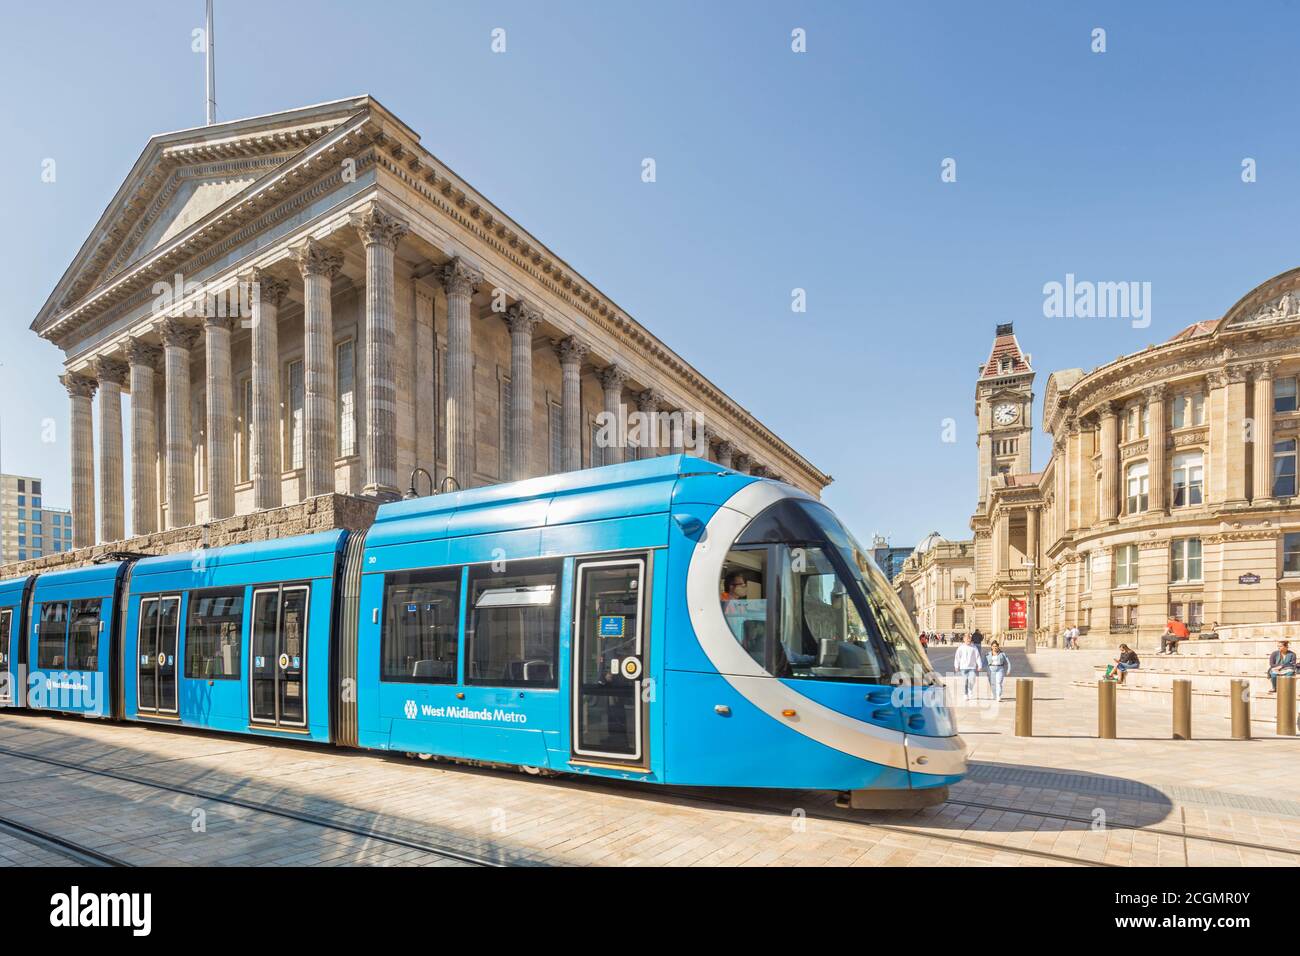 West Midlands Metro que opera entre Birmingham y Wolverhampton, pasando por el Ayuntamiento en Victoria Square, Birmingham, Inglaterra, Reino Unido Foto de stock